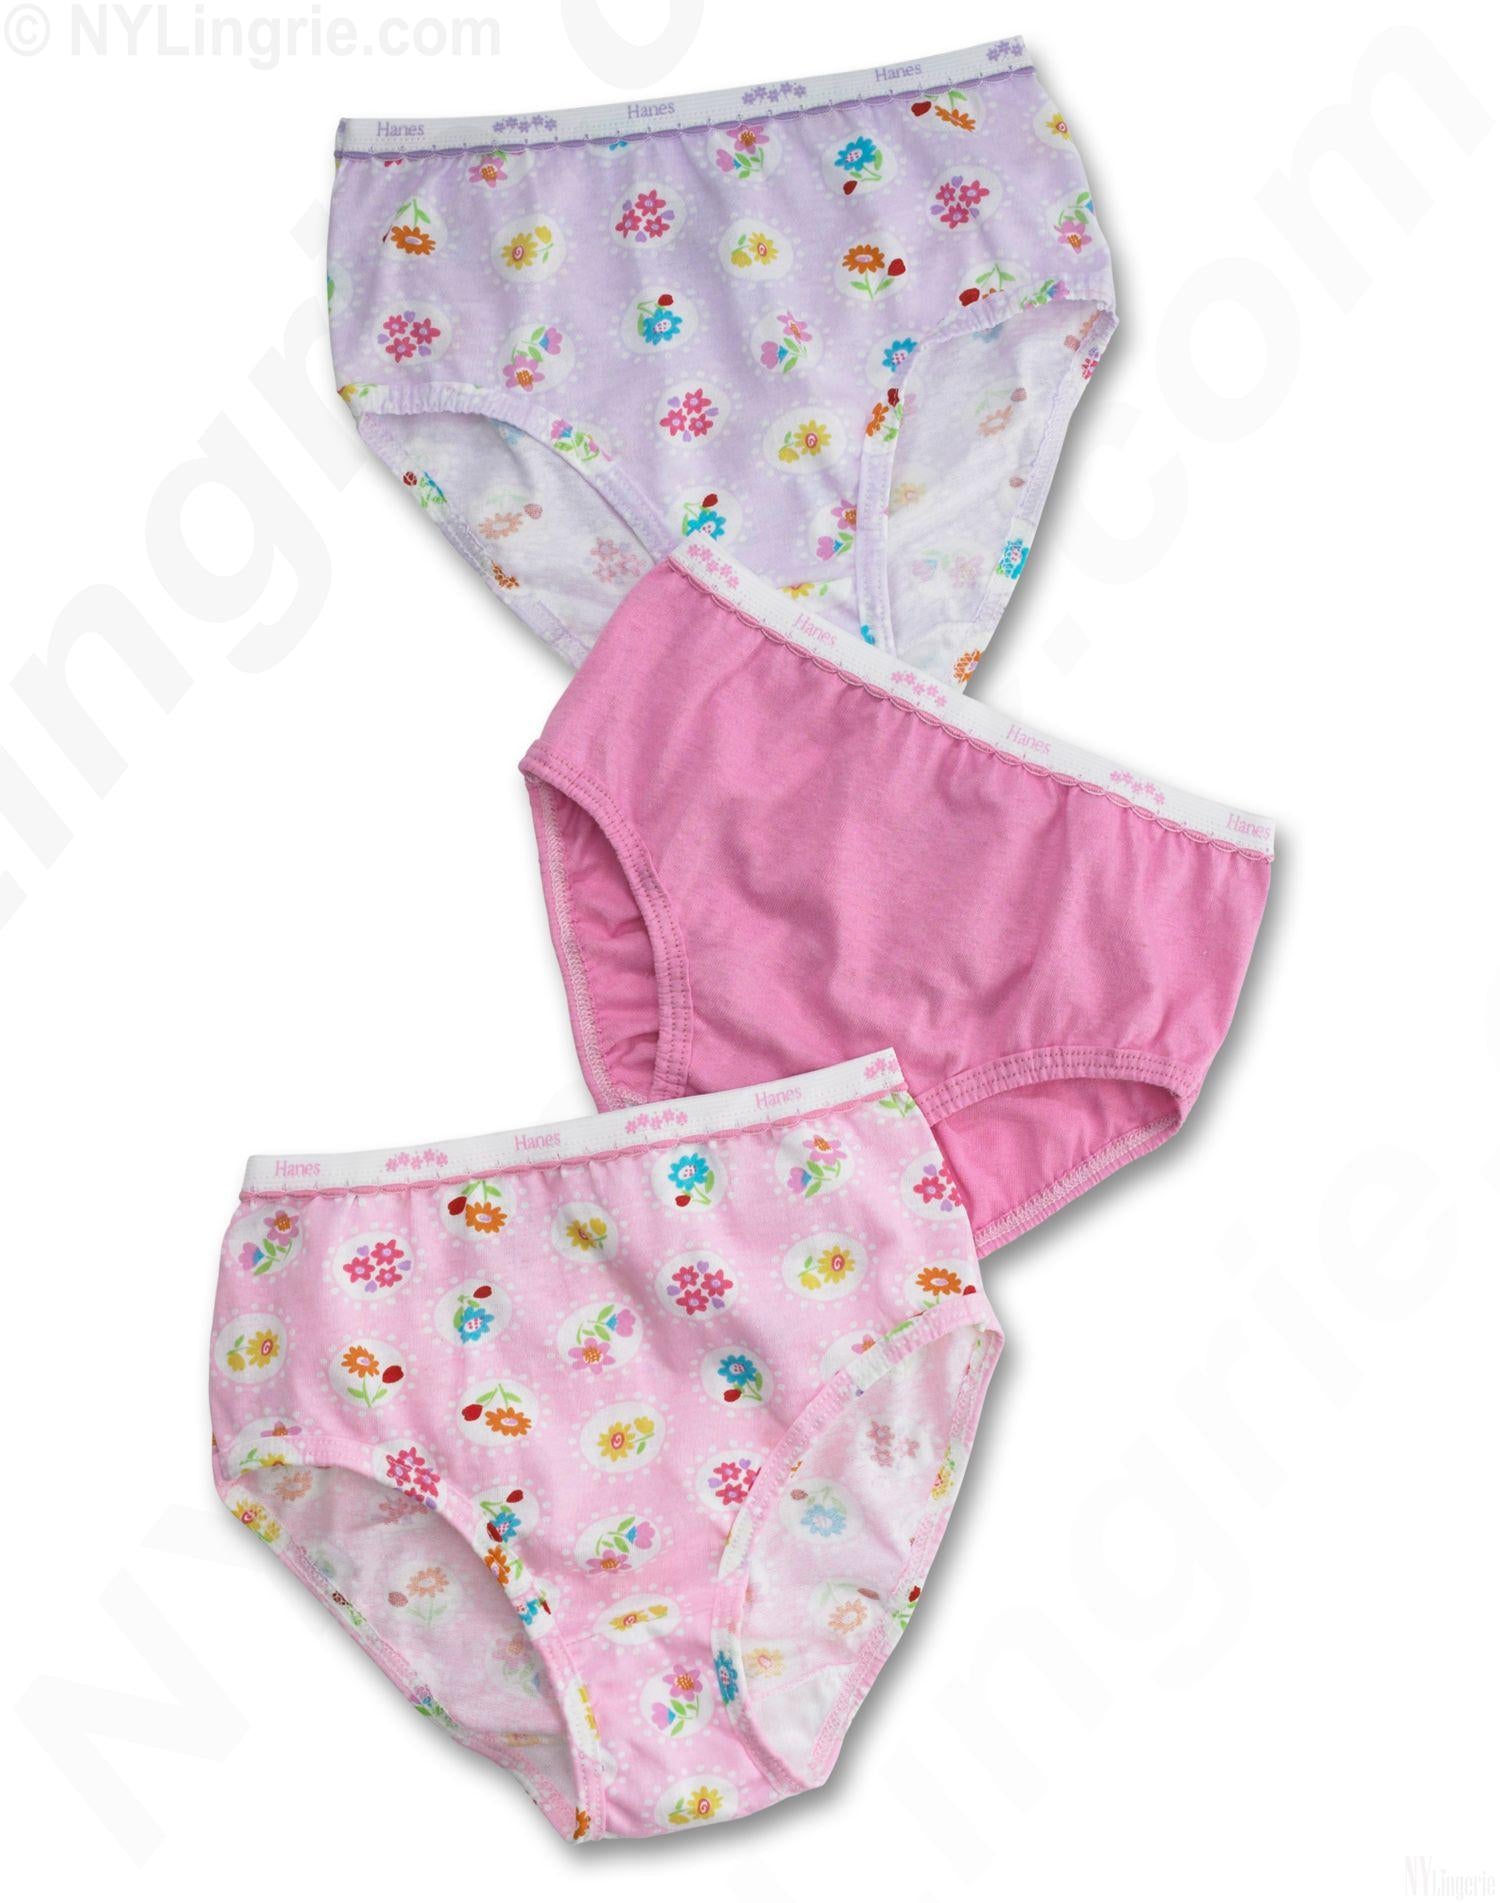 I love it when girls wear hanes her way type panties